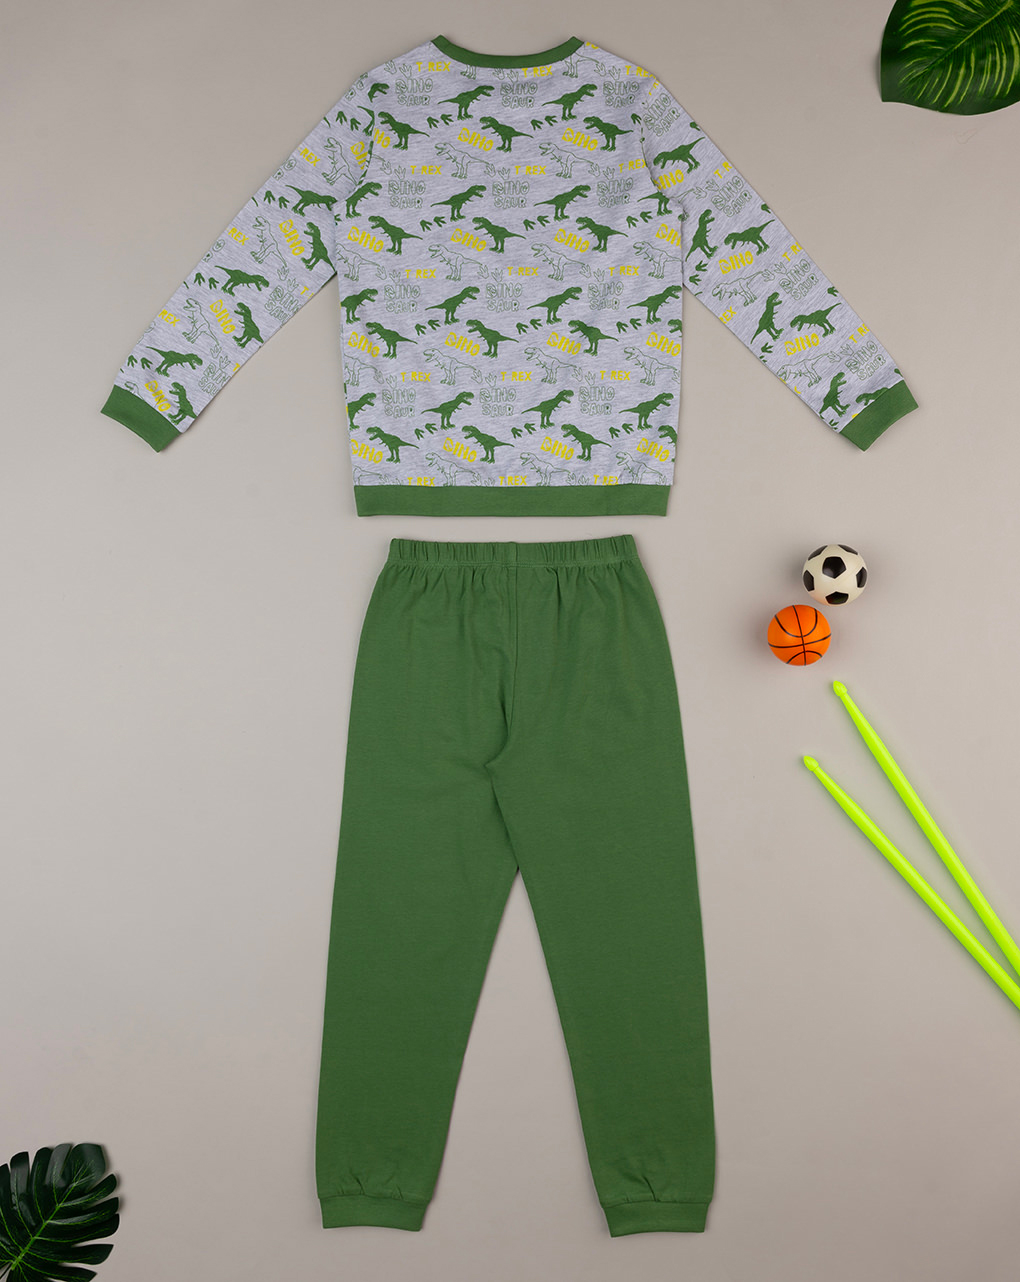 παιδική πιτζάμα γκρι/πράσινη με δεινόσαυρους για αγόρι - Prénatal